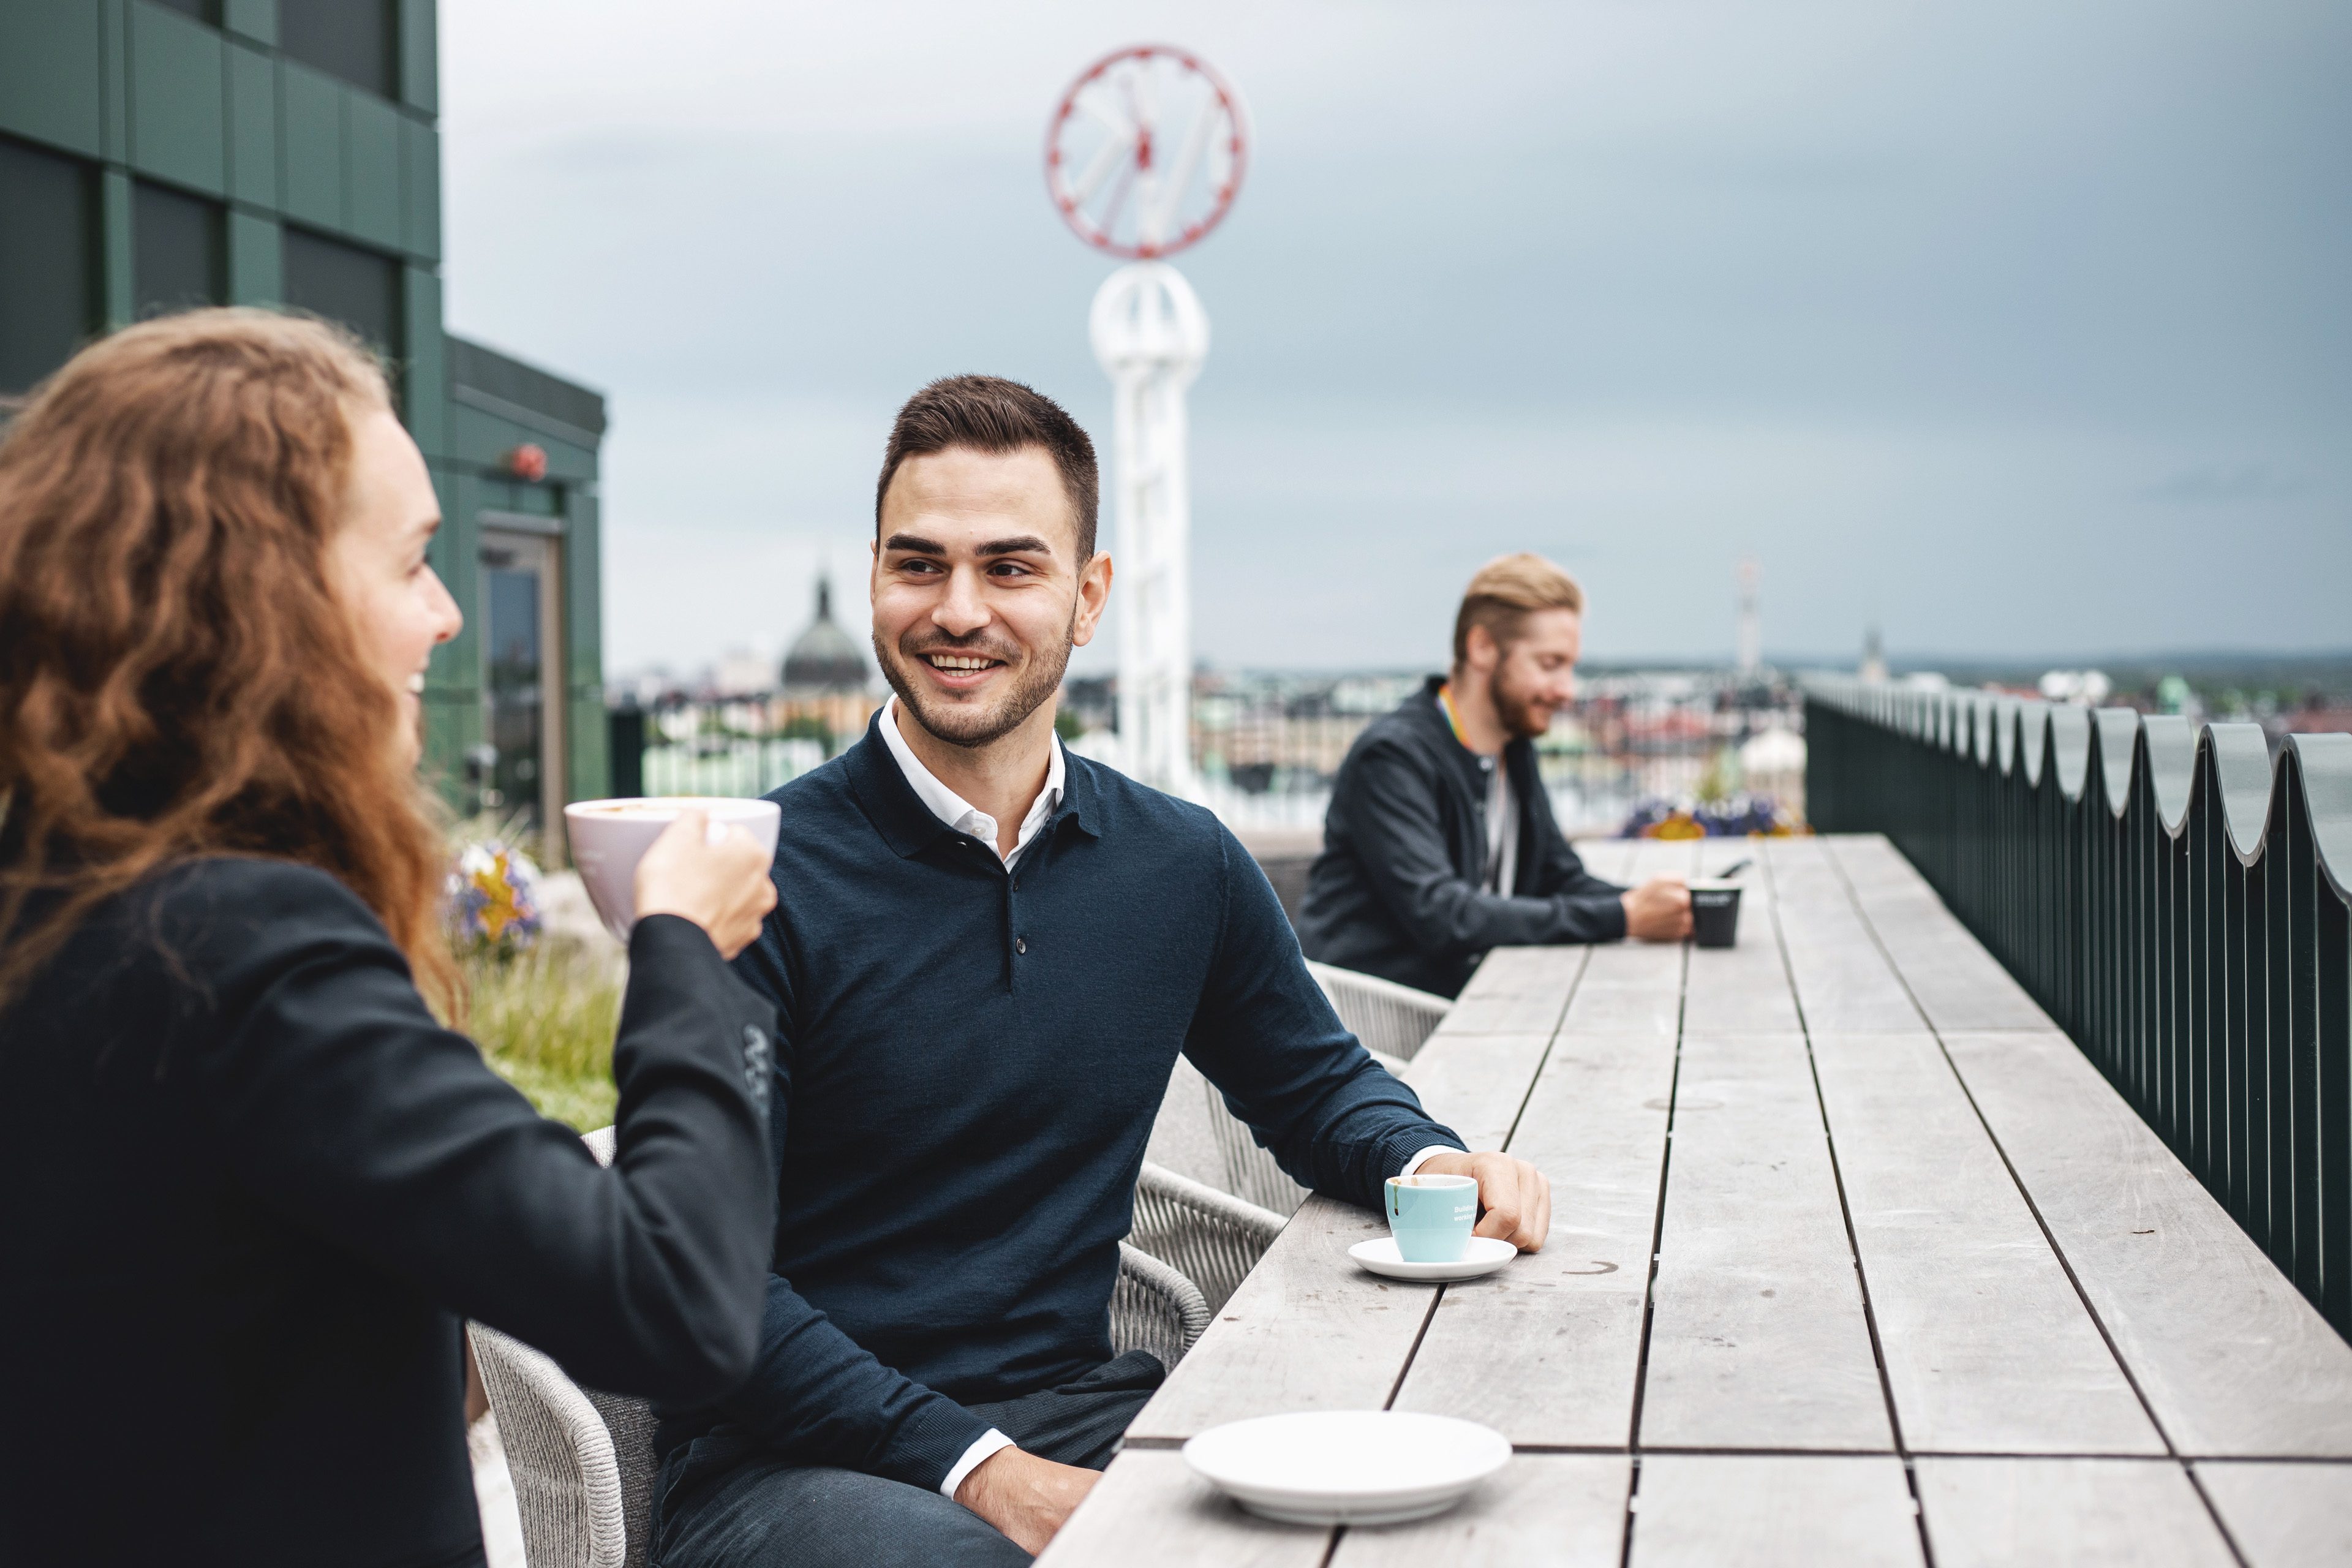  En kvinna och en man sitter på balkongen och tar en kaffepaus